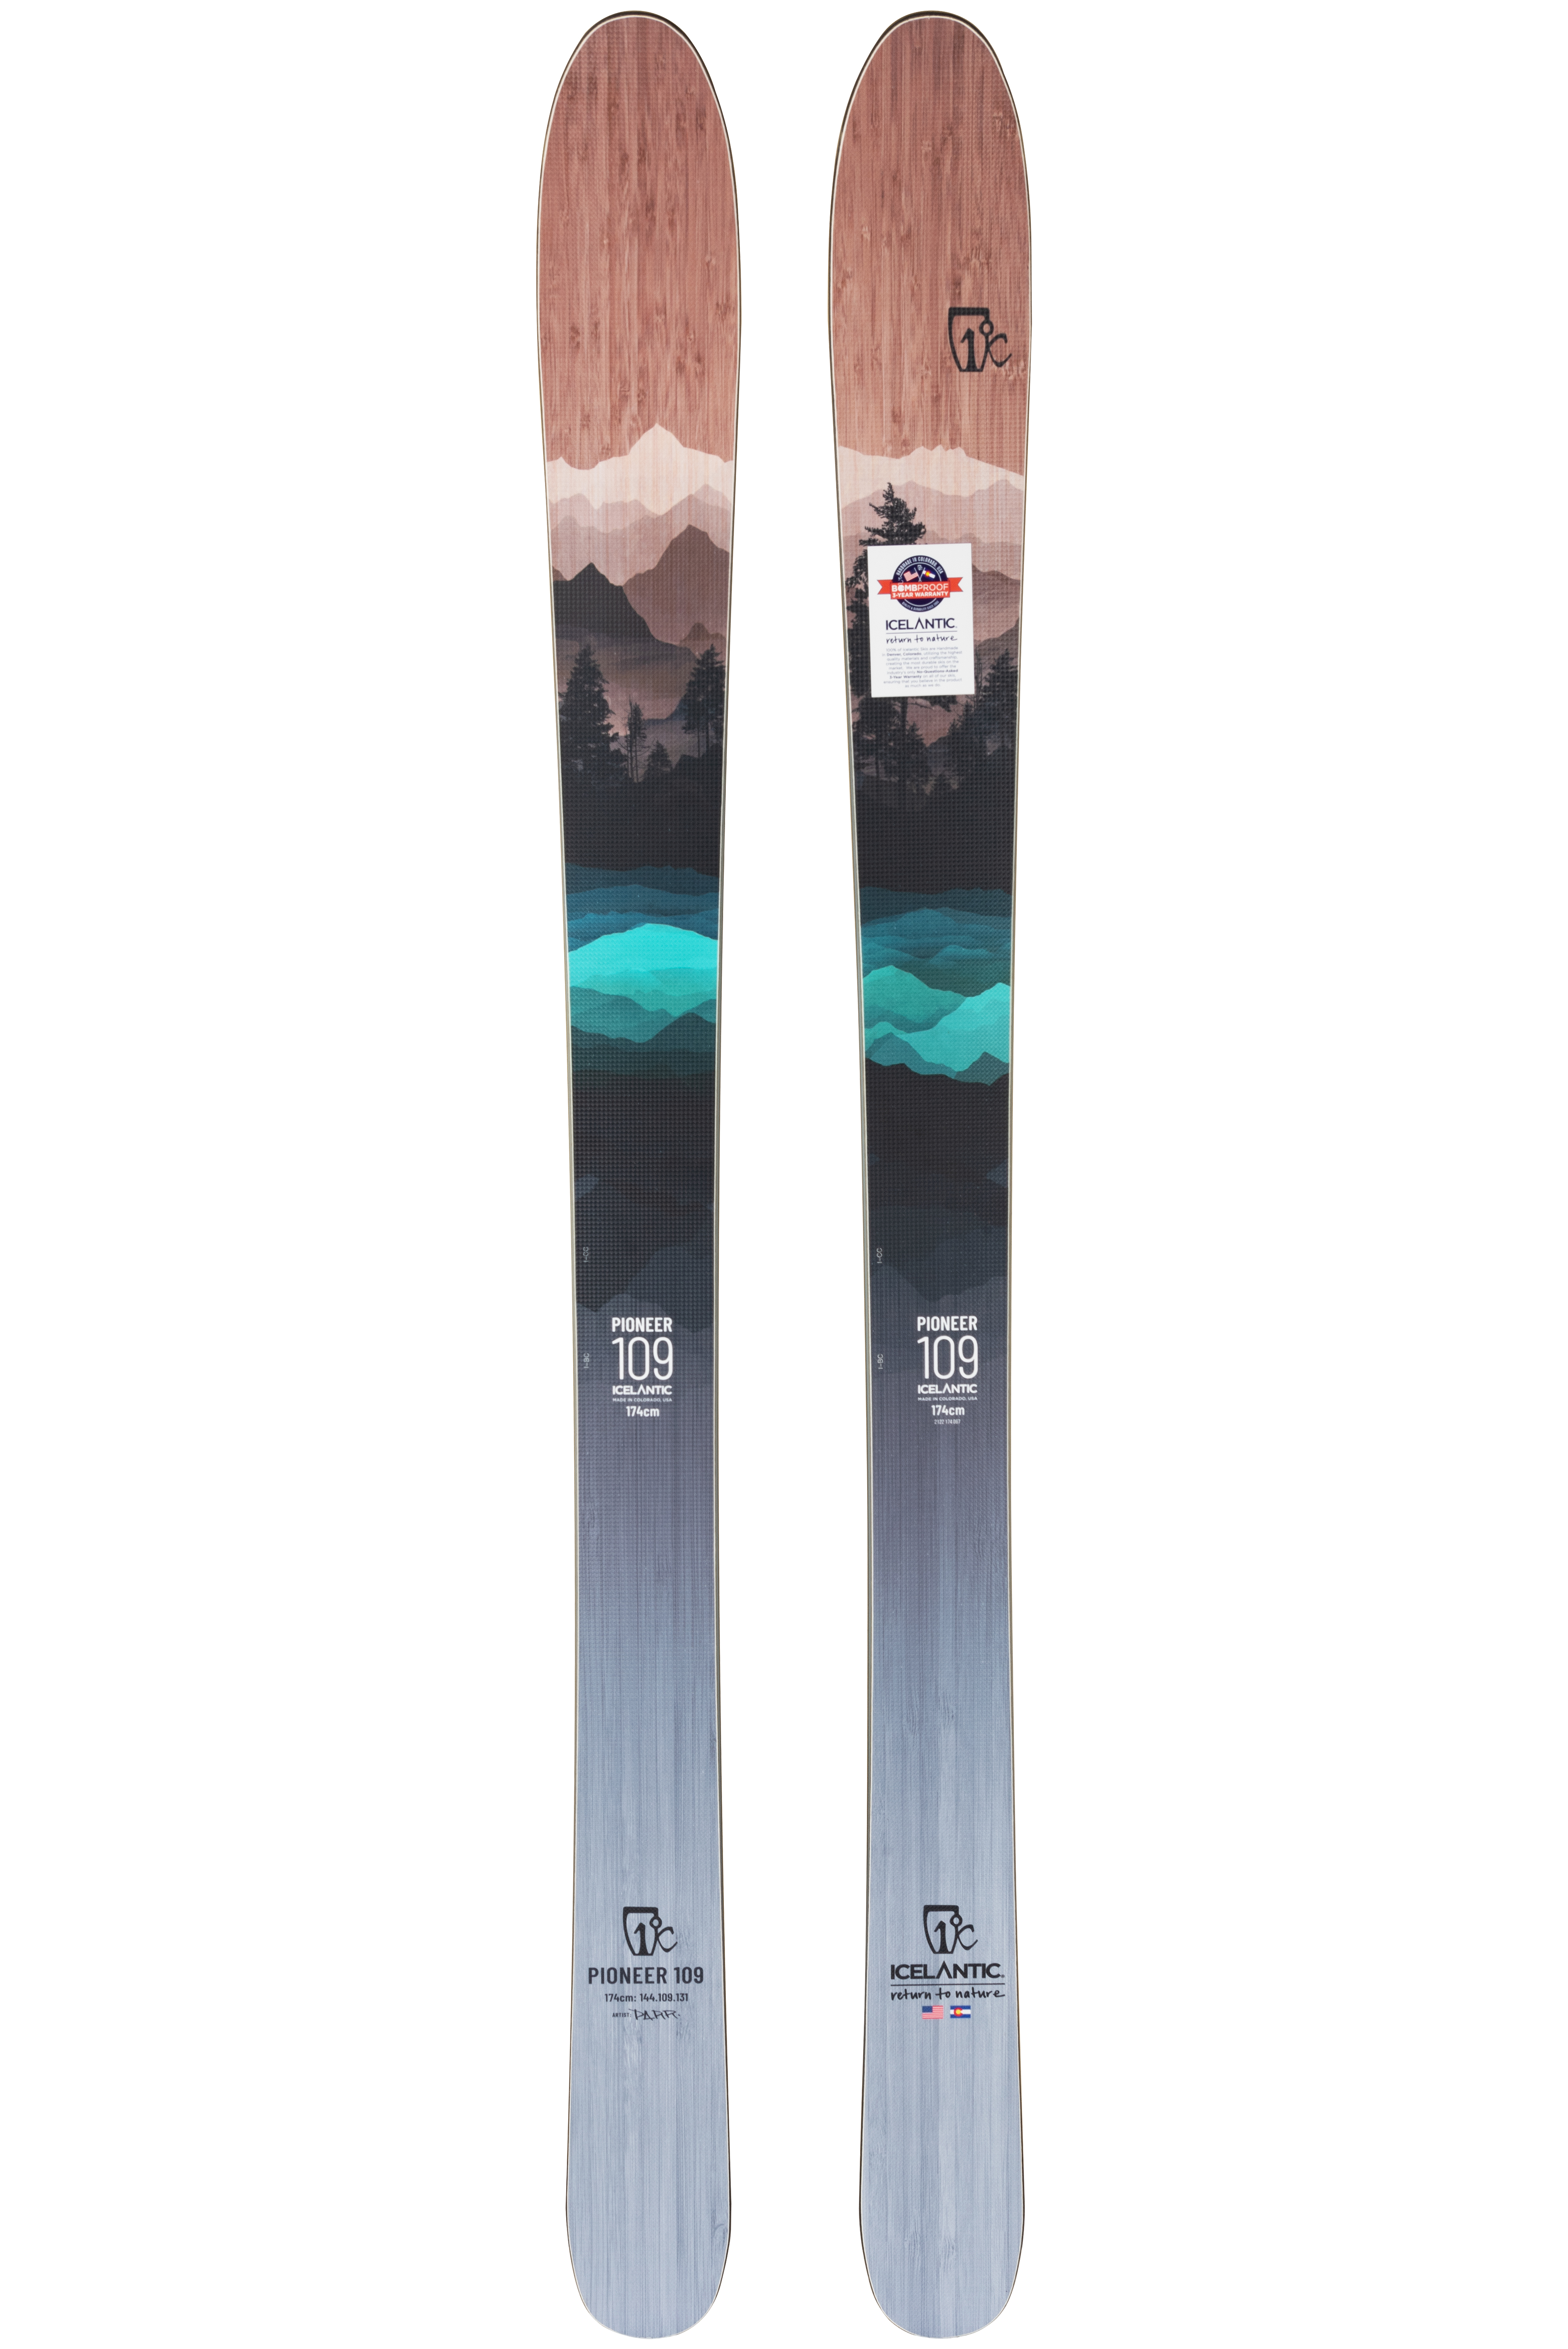 Лыжи с рокером Icelantic Pioneer 109 2021/2022 182cm